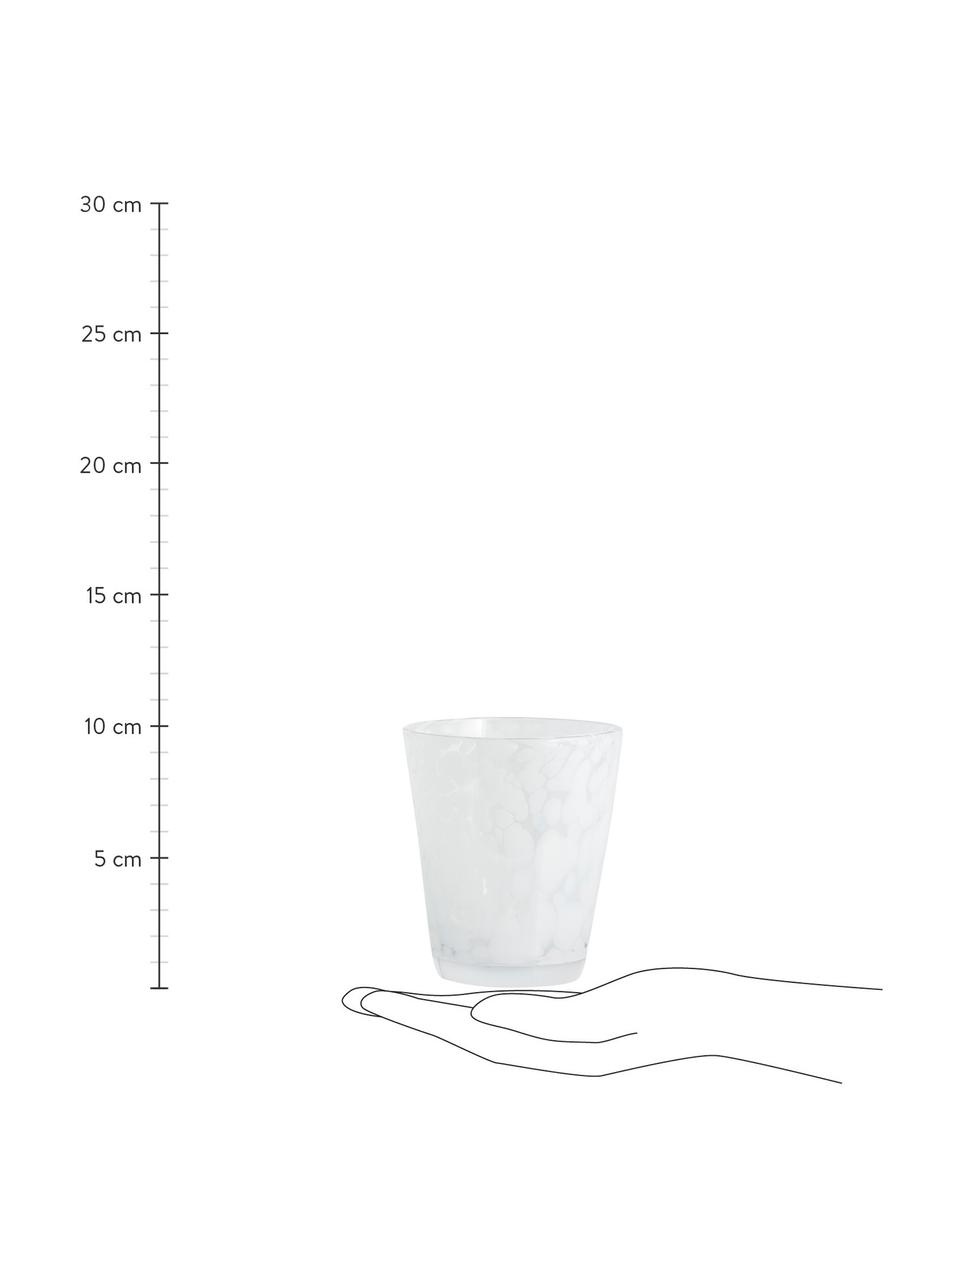 Vzorovaný pohár na vodu Tepin, 6 ks, Sklo, Biela, Ø 9 x V 10 cm